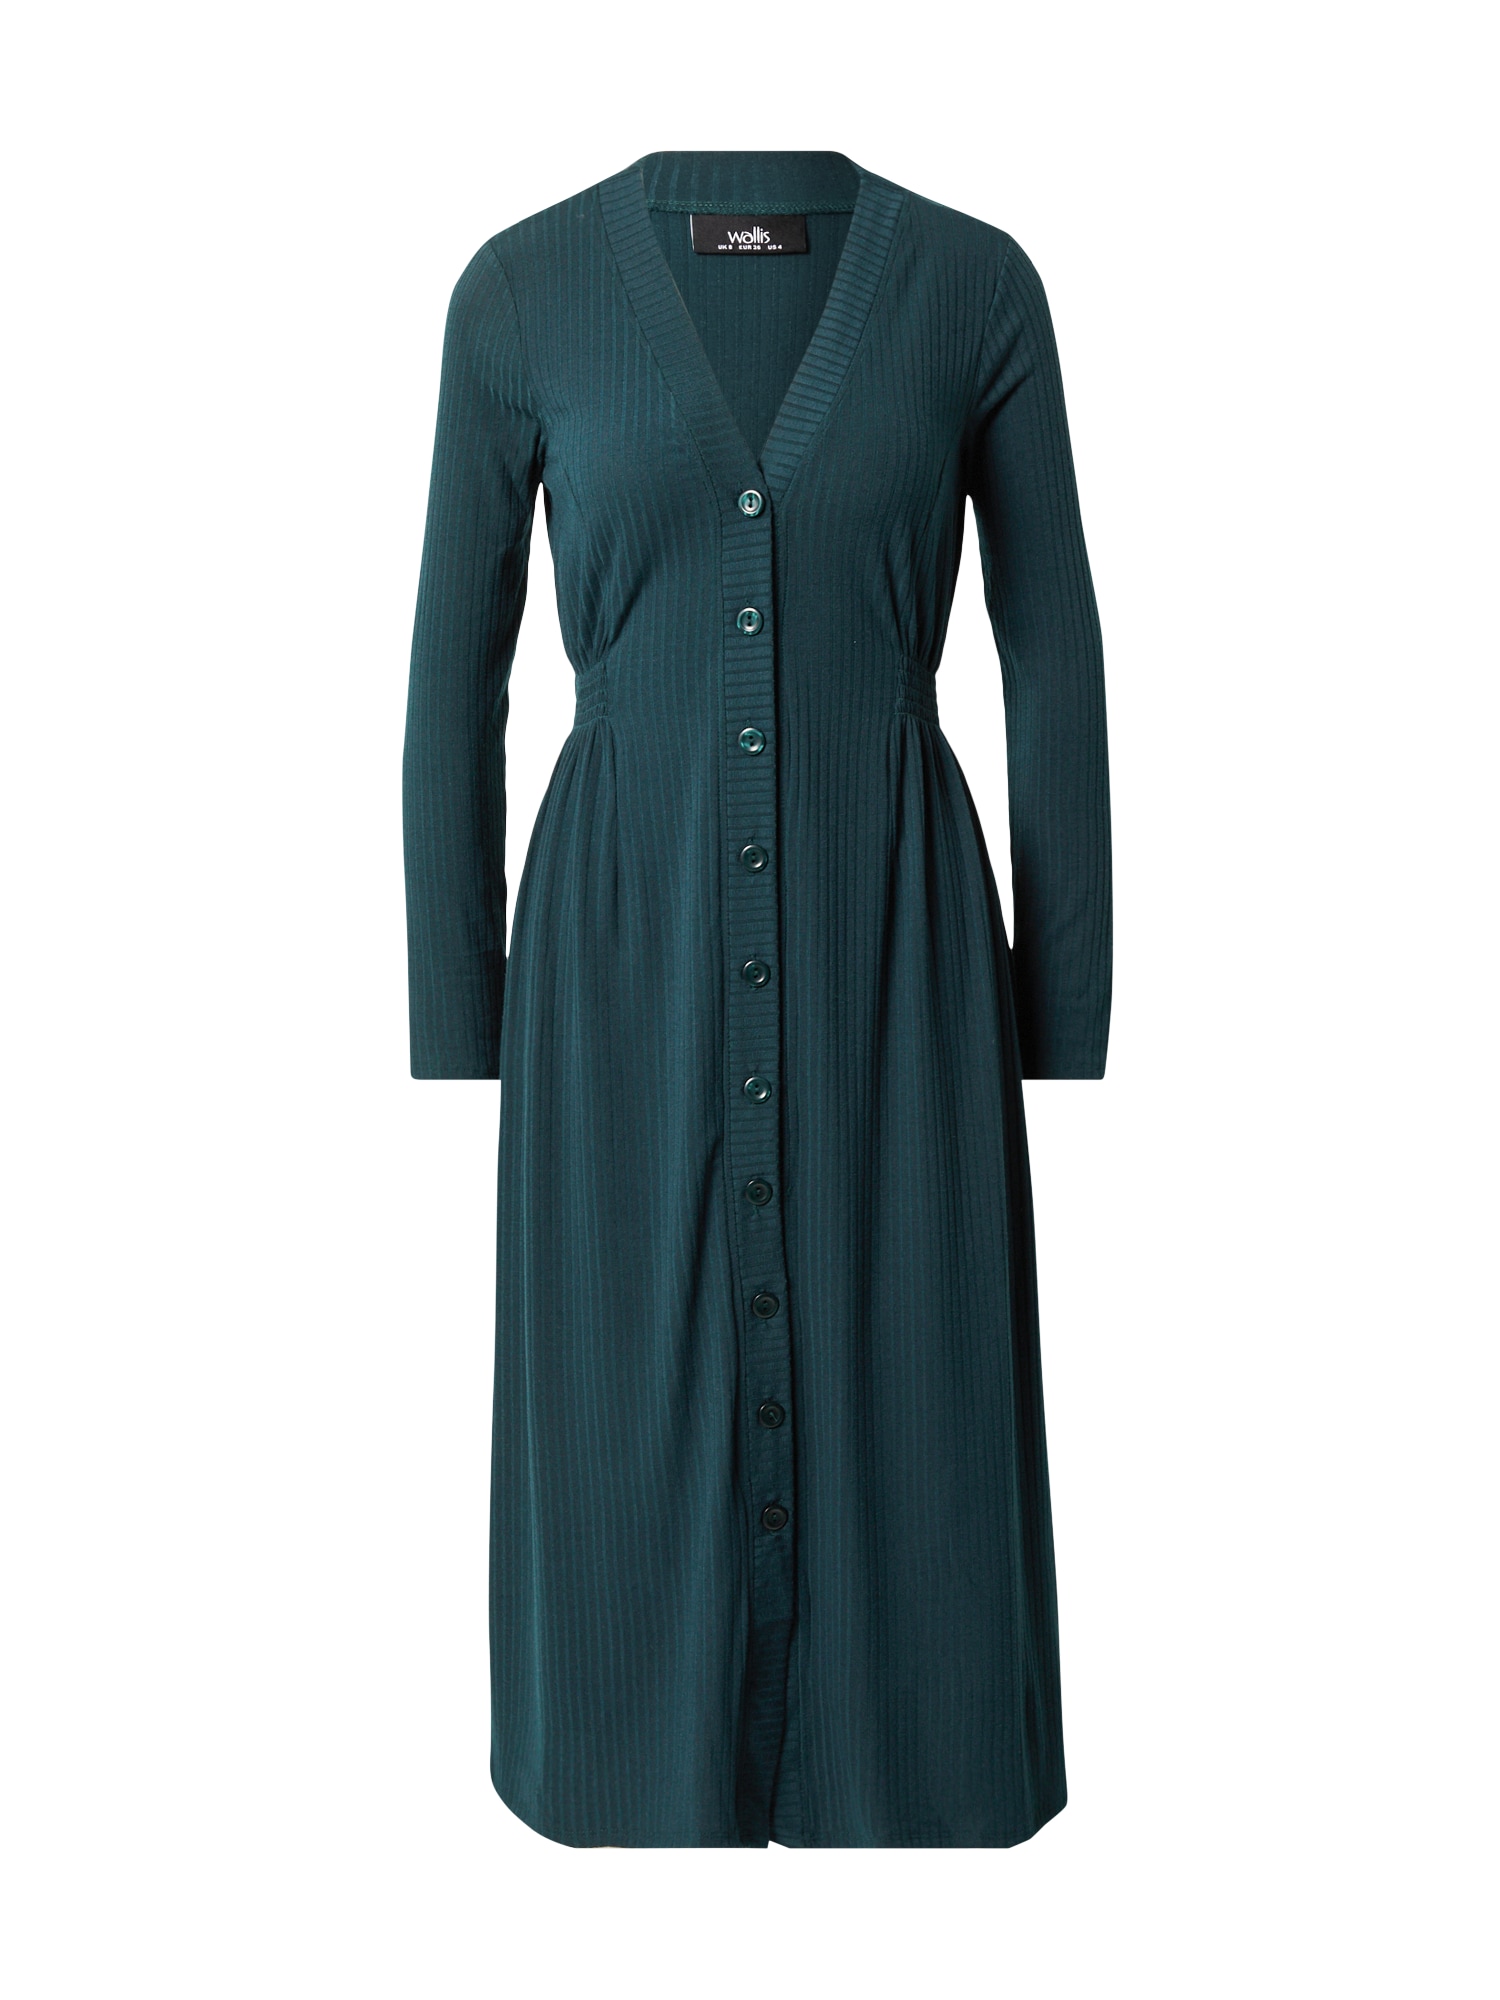 Wallis Curve Suknelė smaragdinė spalva